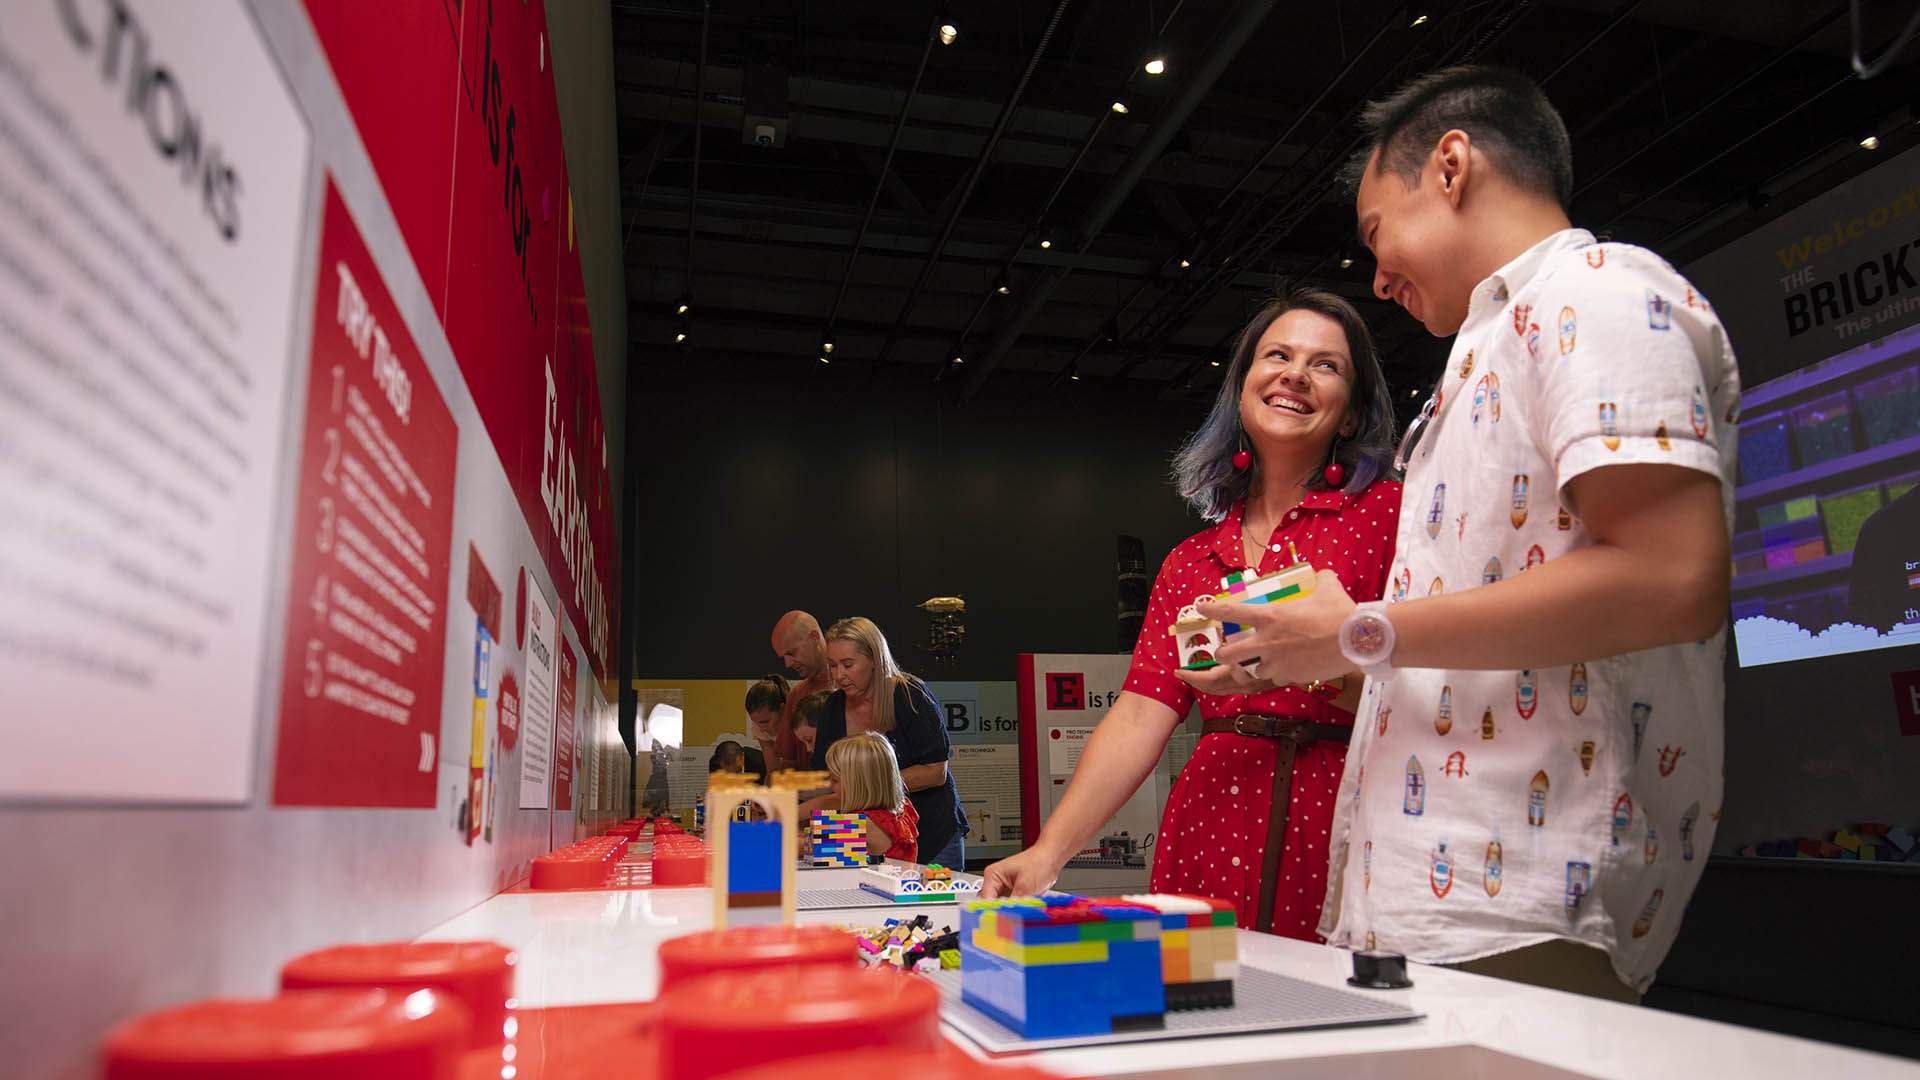 Bricktionary: The Interactive Lego Brick Exhibition